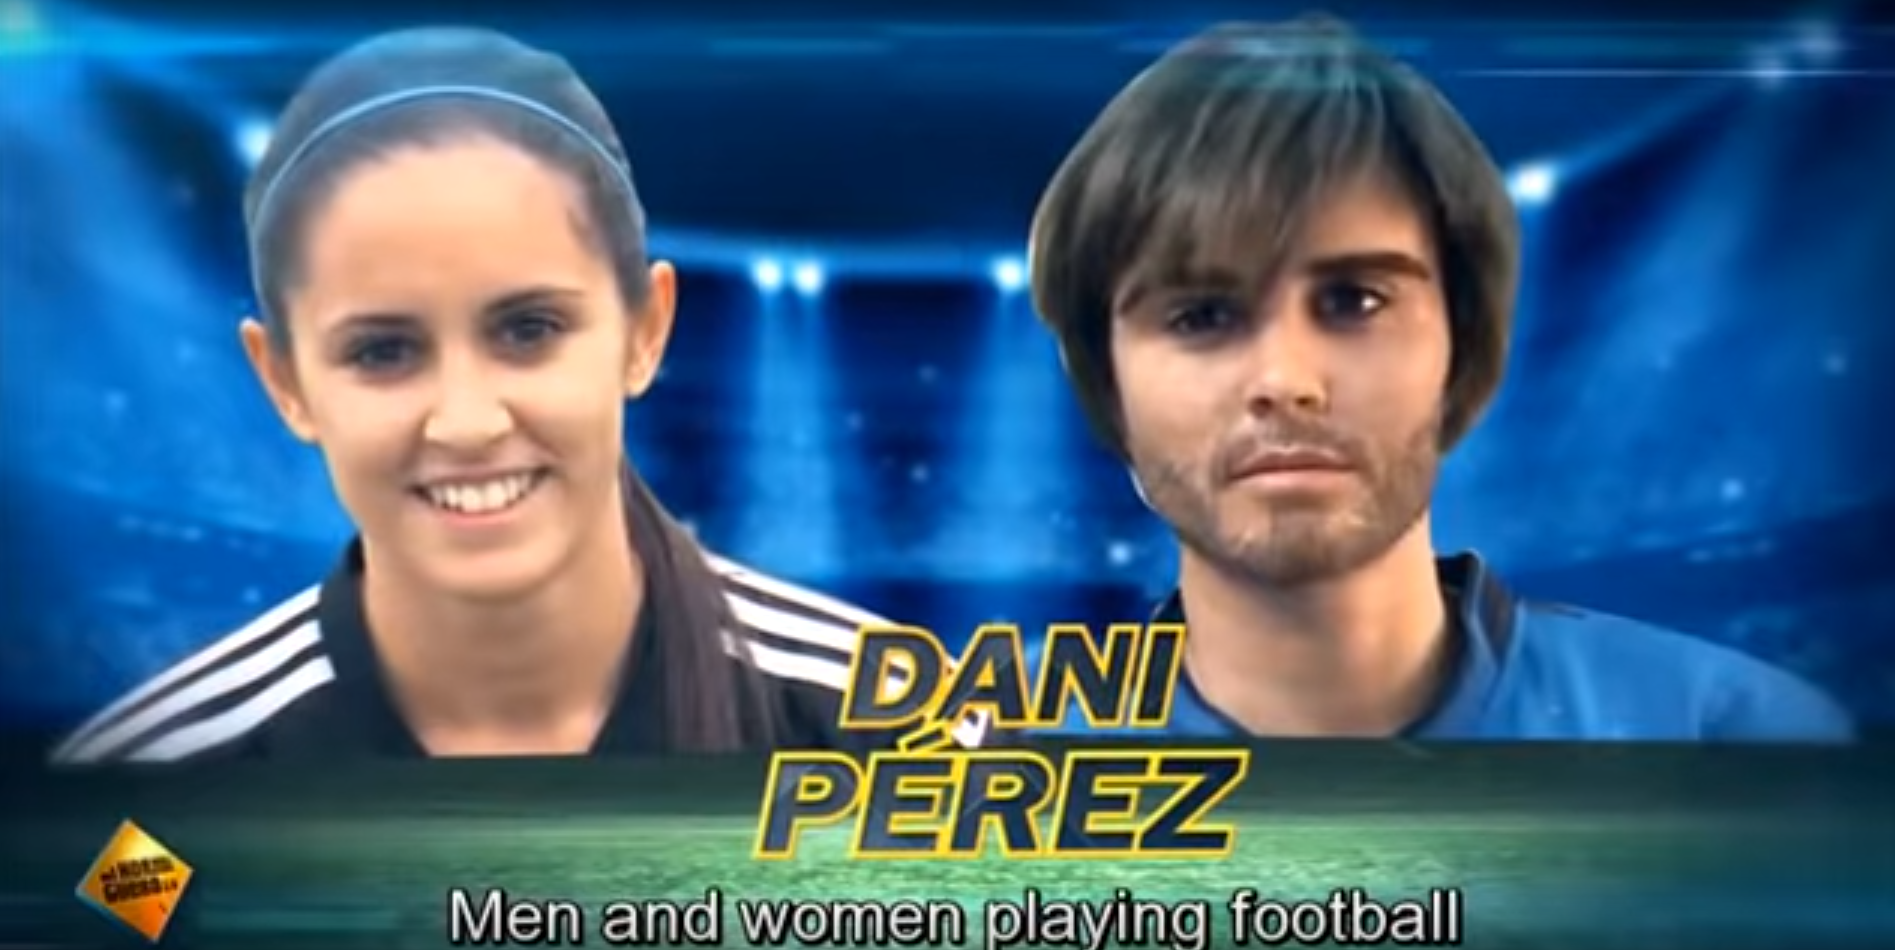 VIDEO: Kā vīrieši reaģē, uzzinot, ka komandas biedrs ir sieviete jeb laužam stereotipus par sievietēm futbolā!